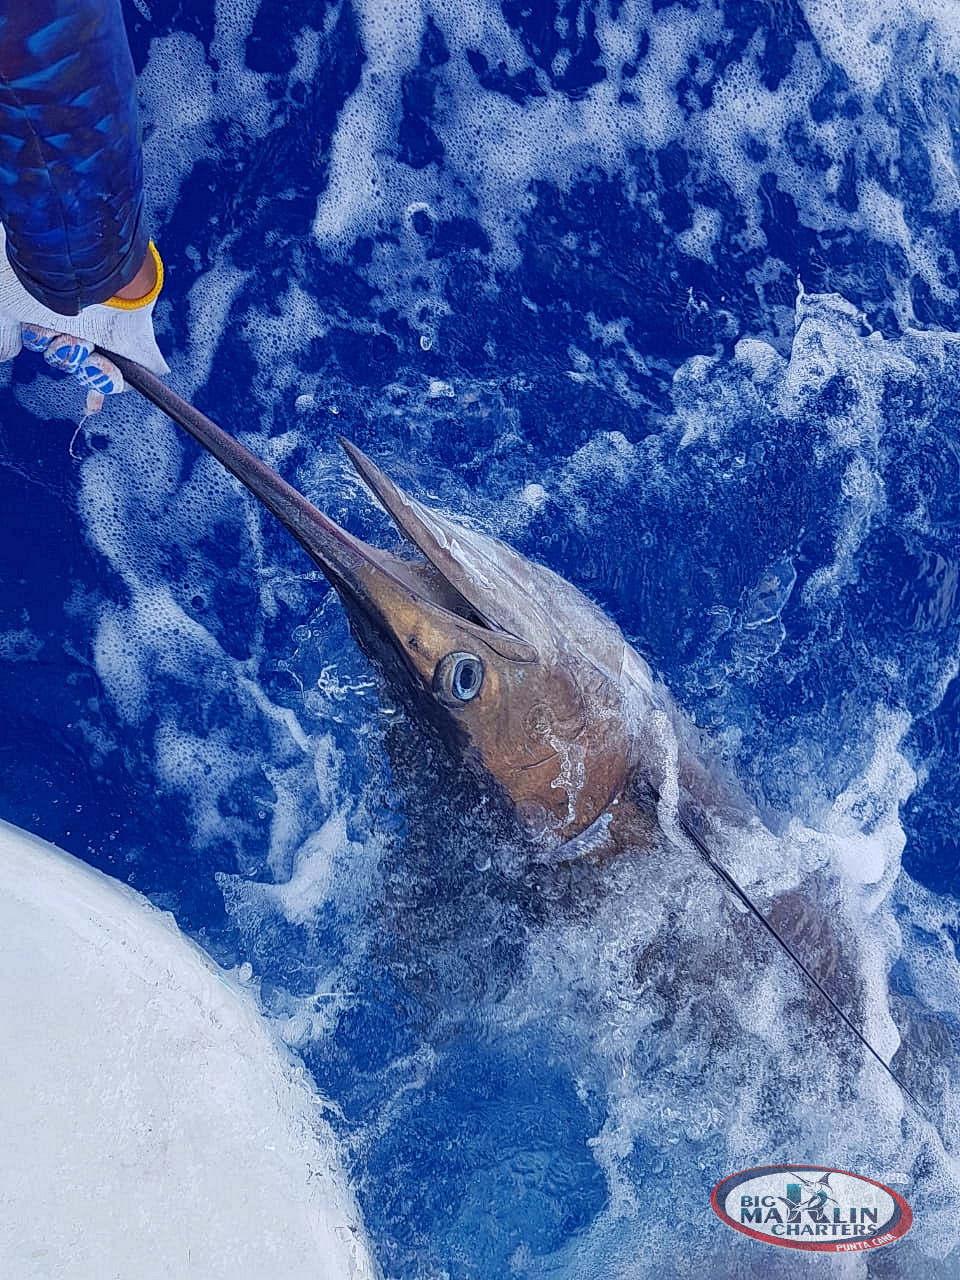 Punta Cana fishing charters marlin deep sea fishing with Big marlin punta cana